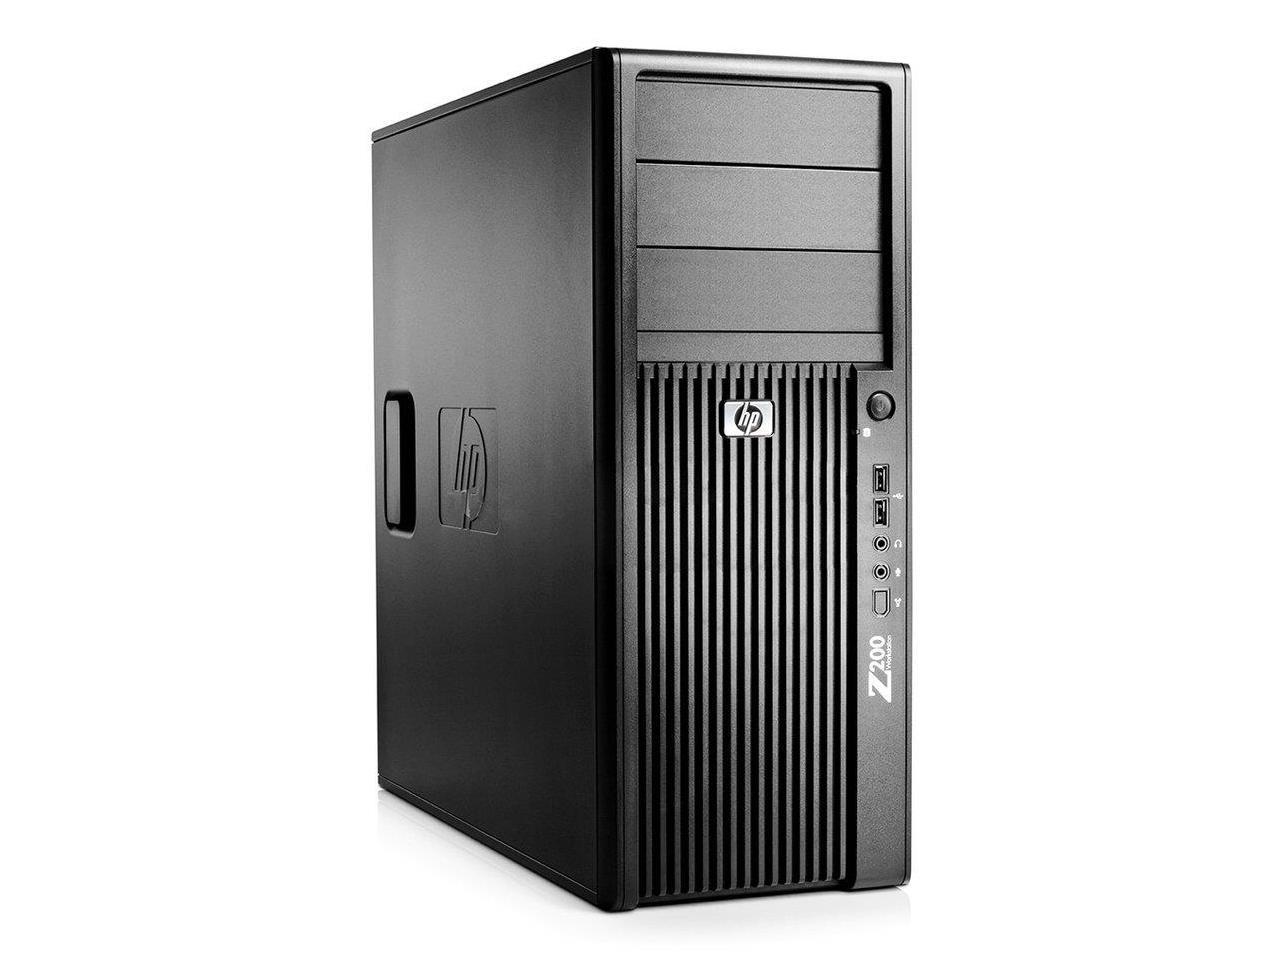 HP Z200 MT Desktop i5-650 3.20GHz 2-Cores 8GB DDR3 1TB HDD